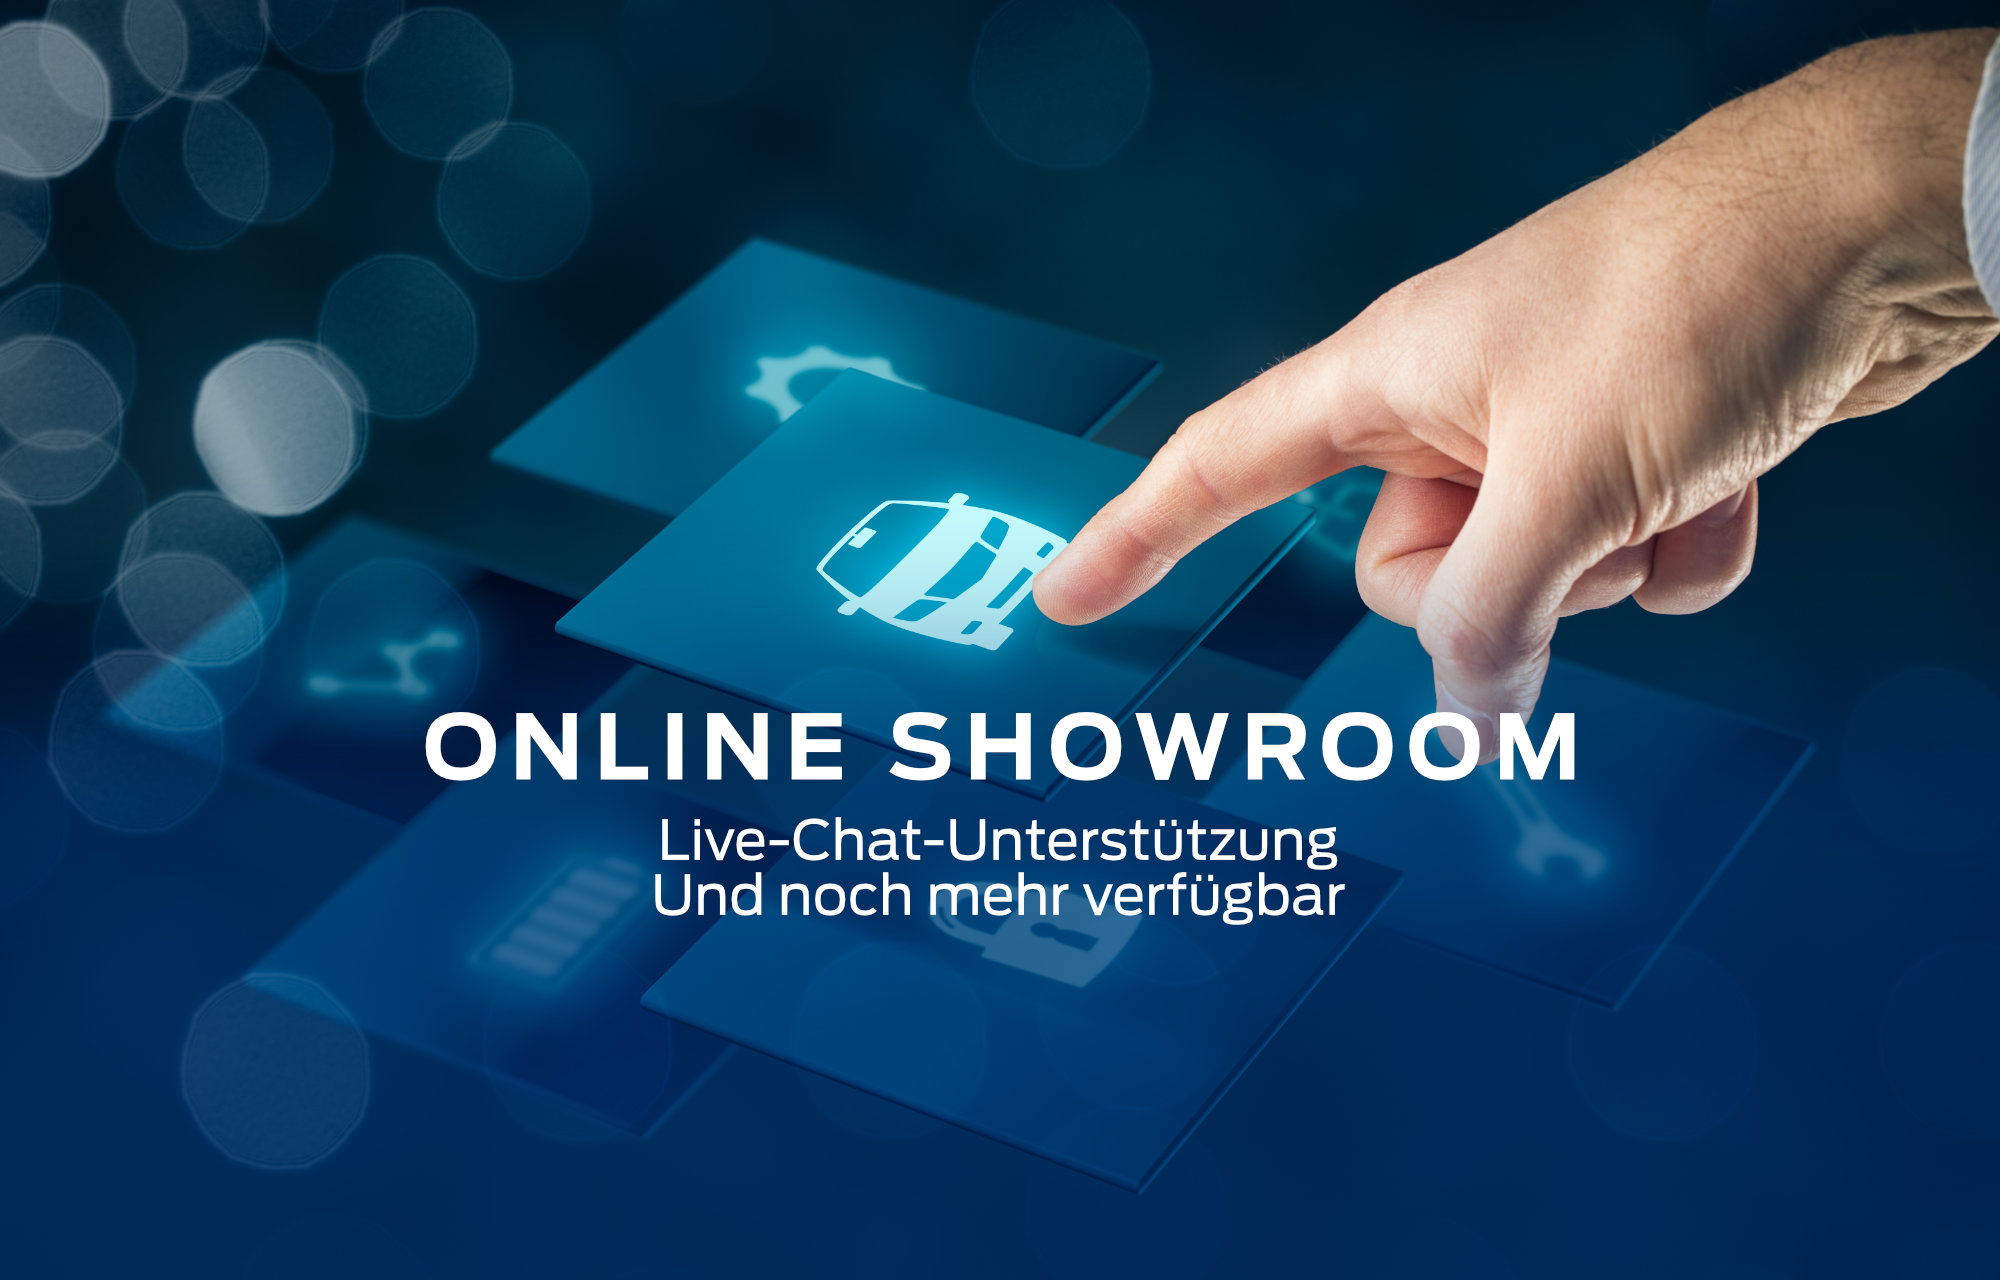 Online Showroom